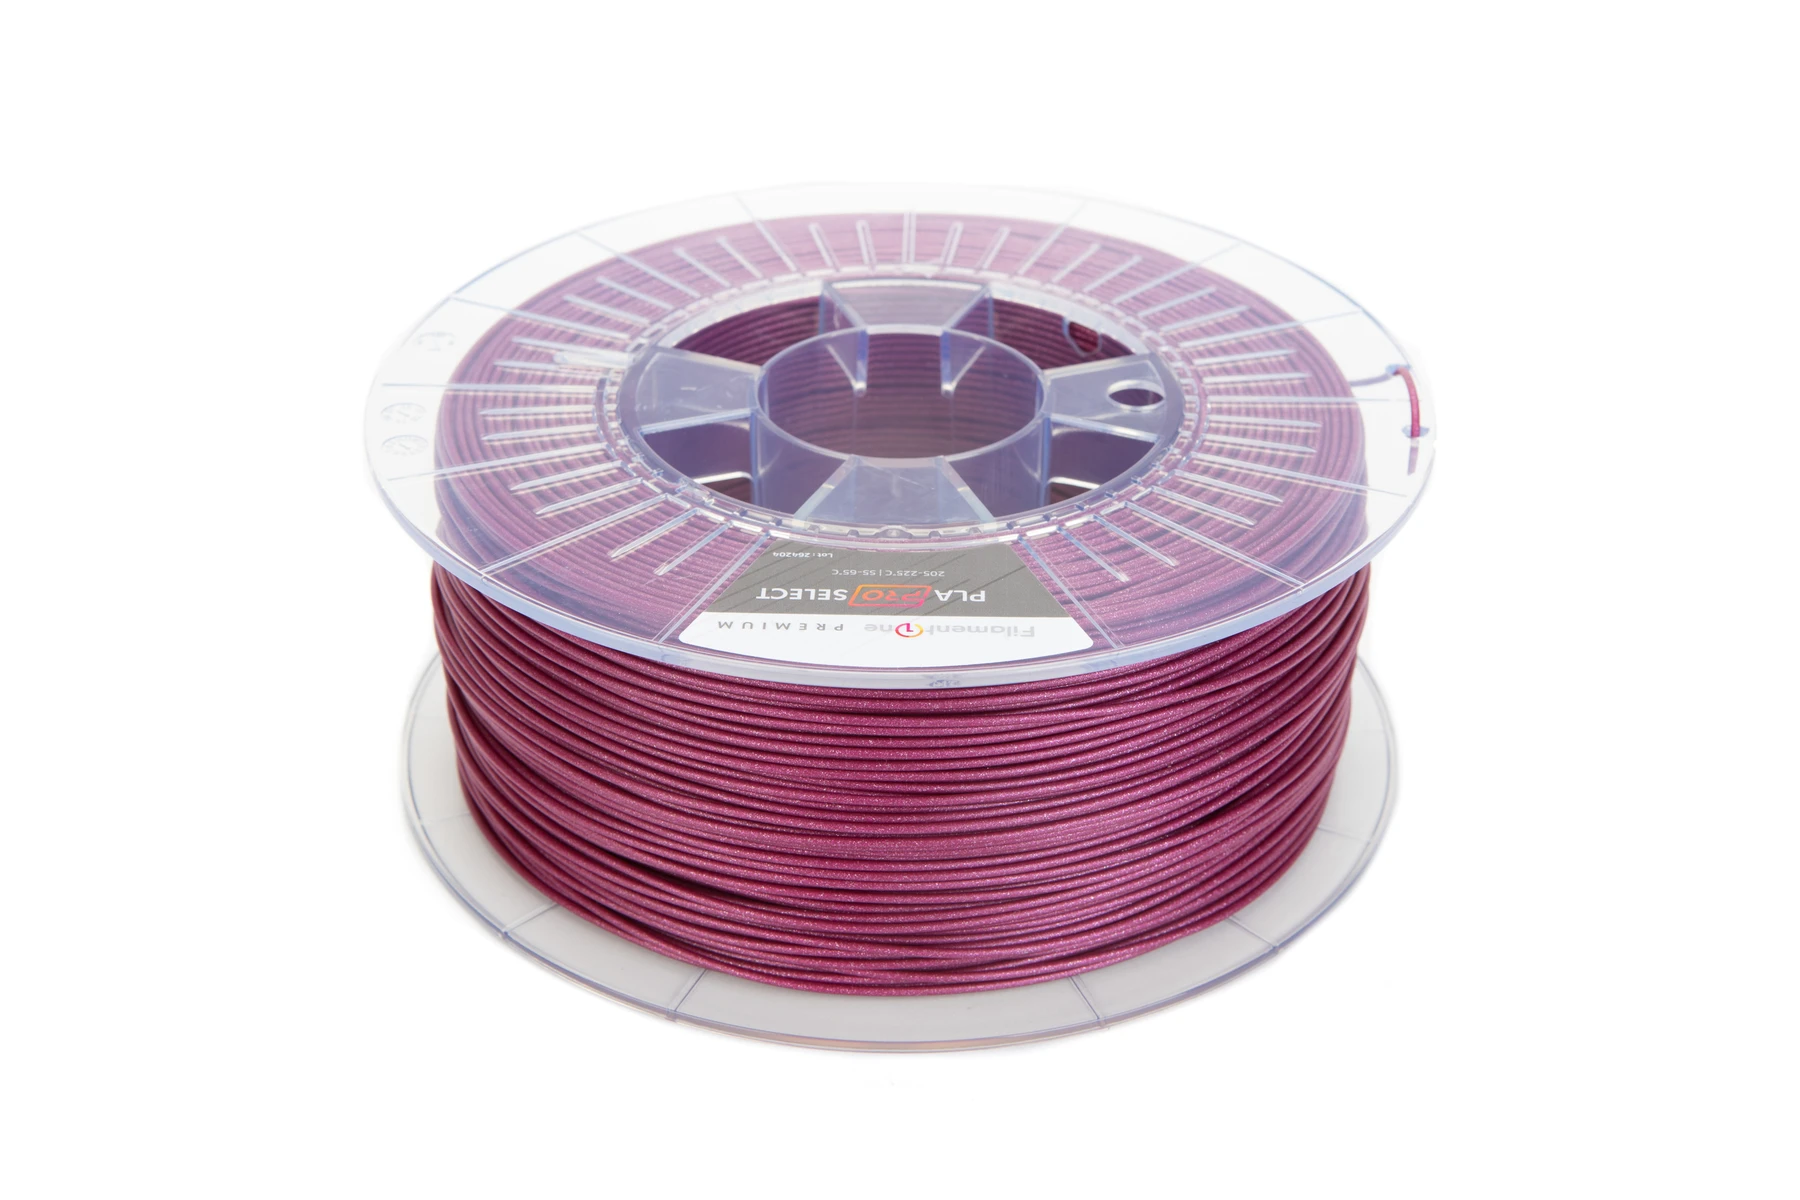 Glint Purple. Filament One PLA reel.